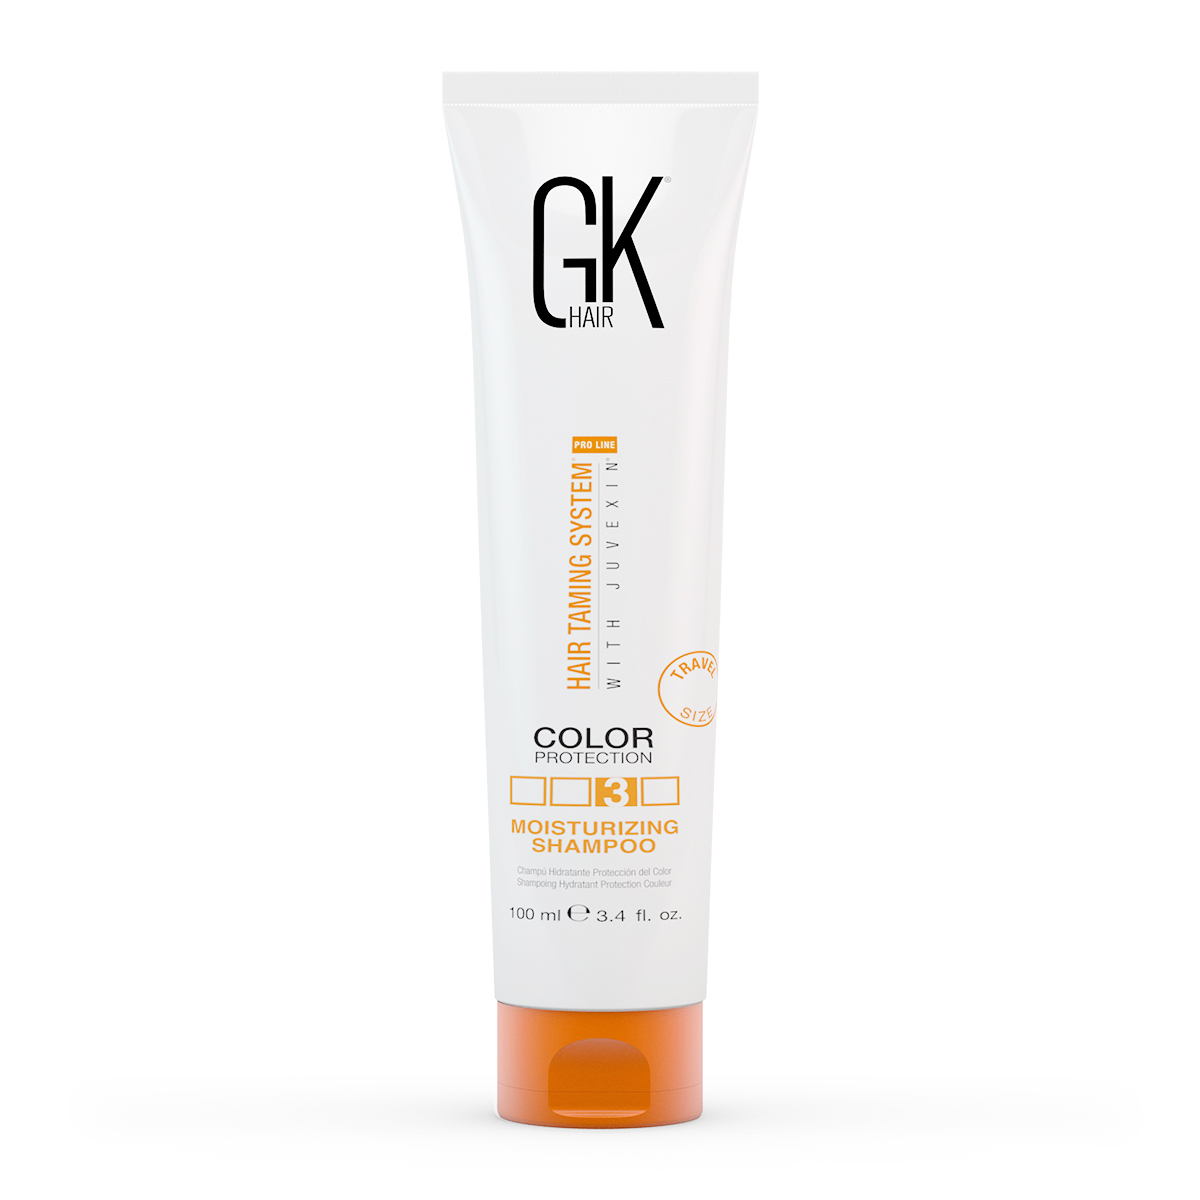 GKhair Moisturizing Shampoo Color Protection 100ml - интернет-магазин профессиональной косметики Spadream, изображение 35782